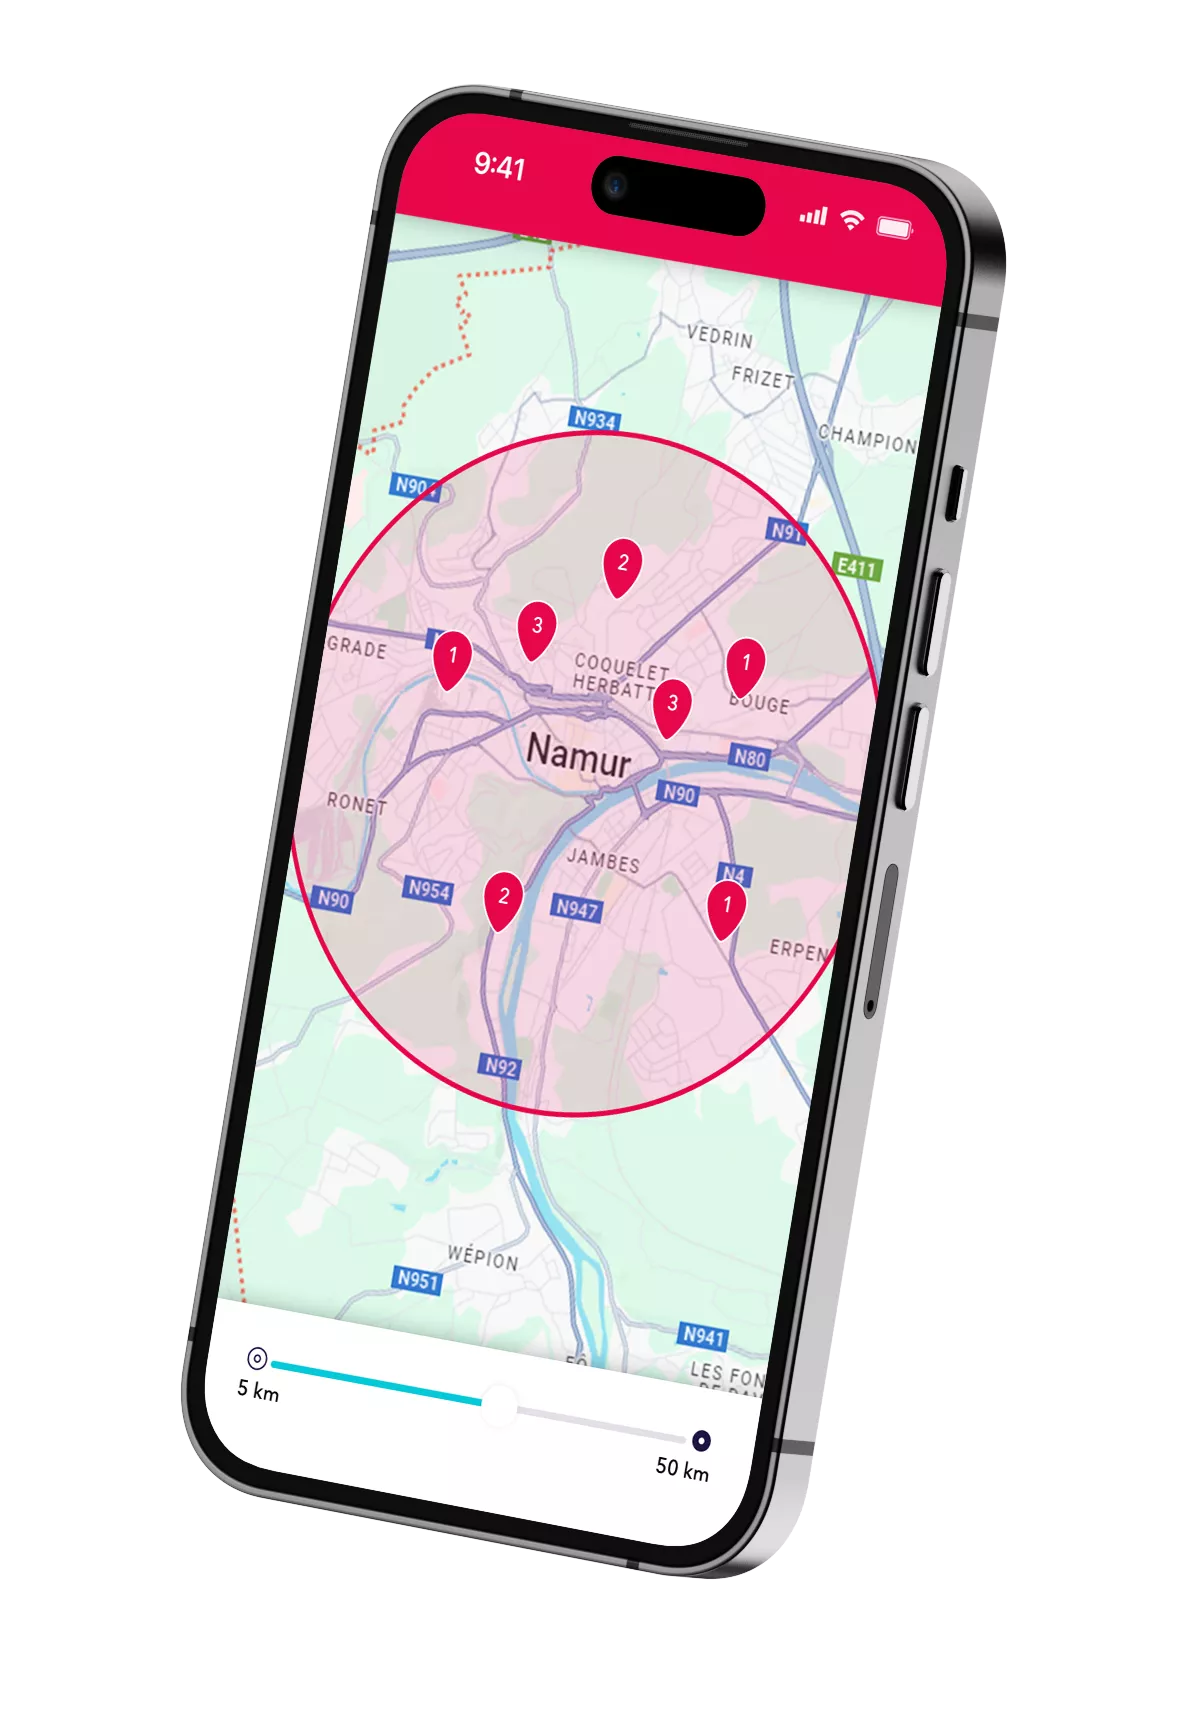 Un smartphone montrant les possibilités de flexi-jobs dans la région de Namur